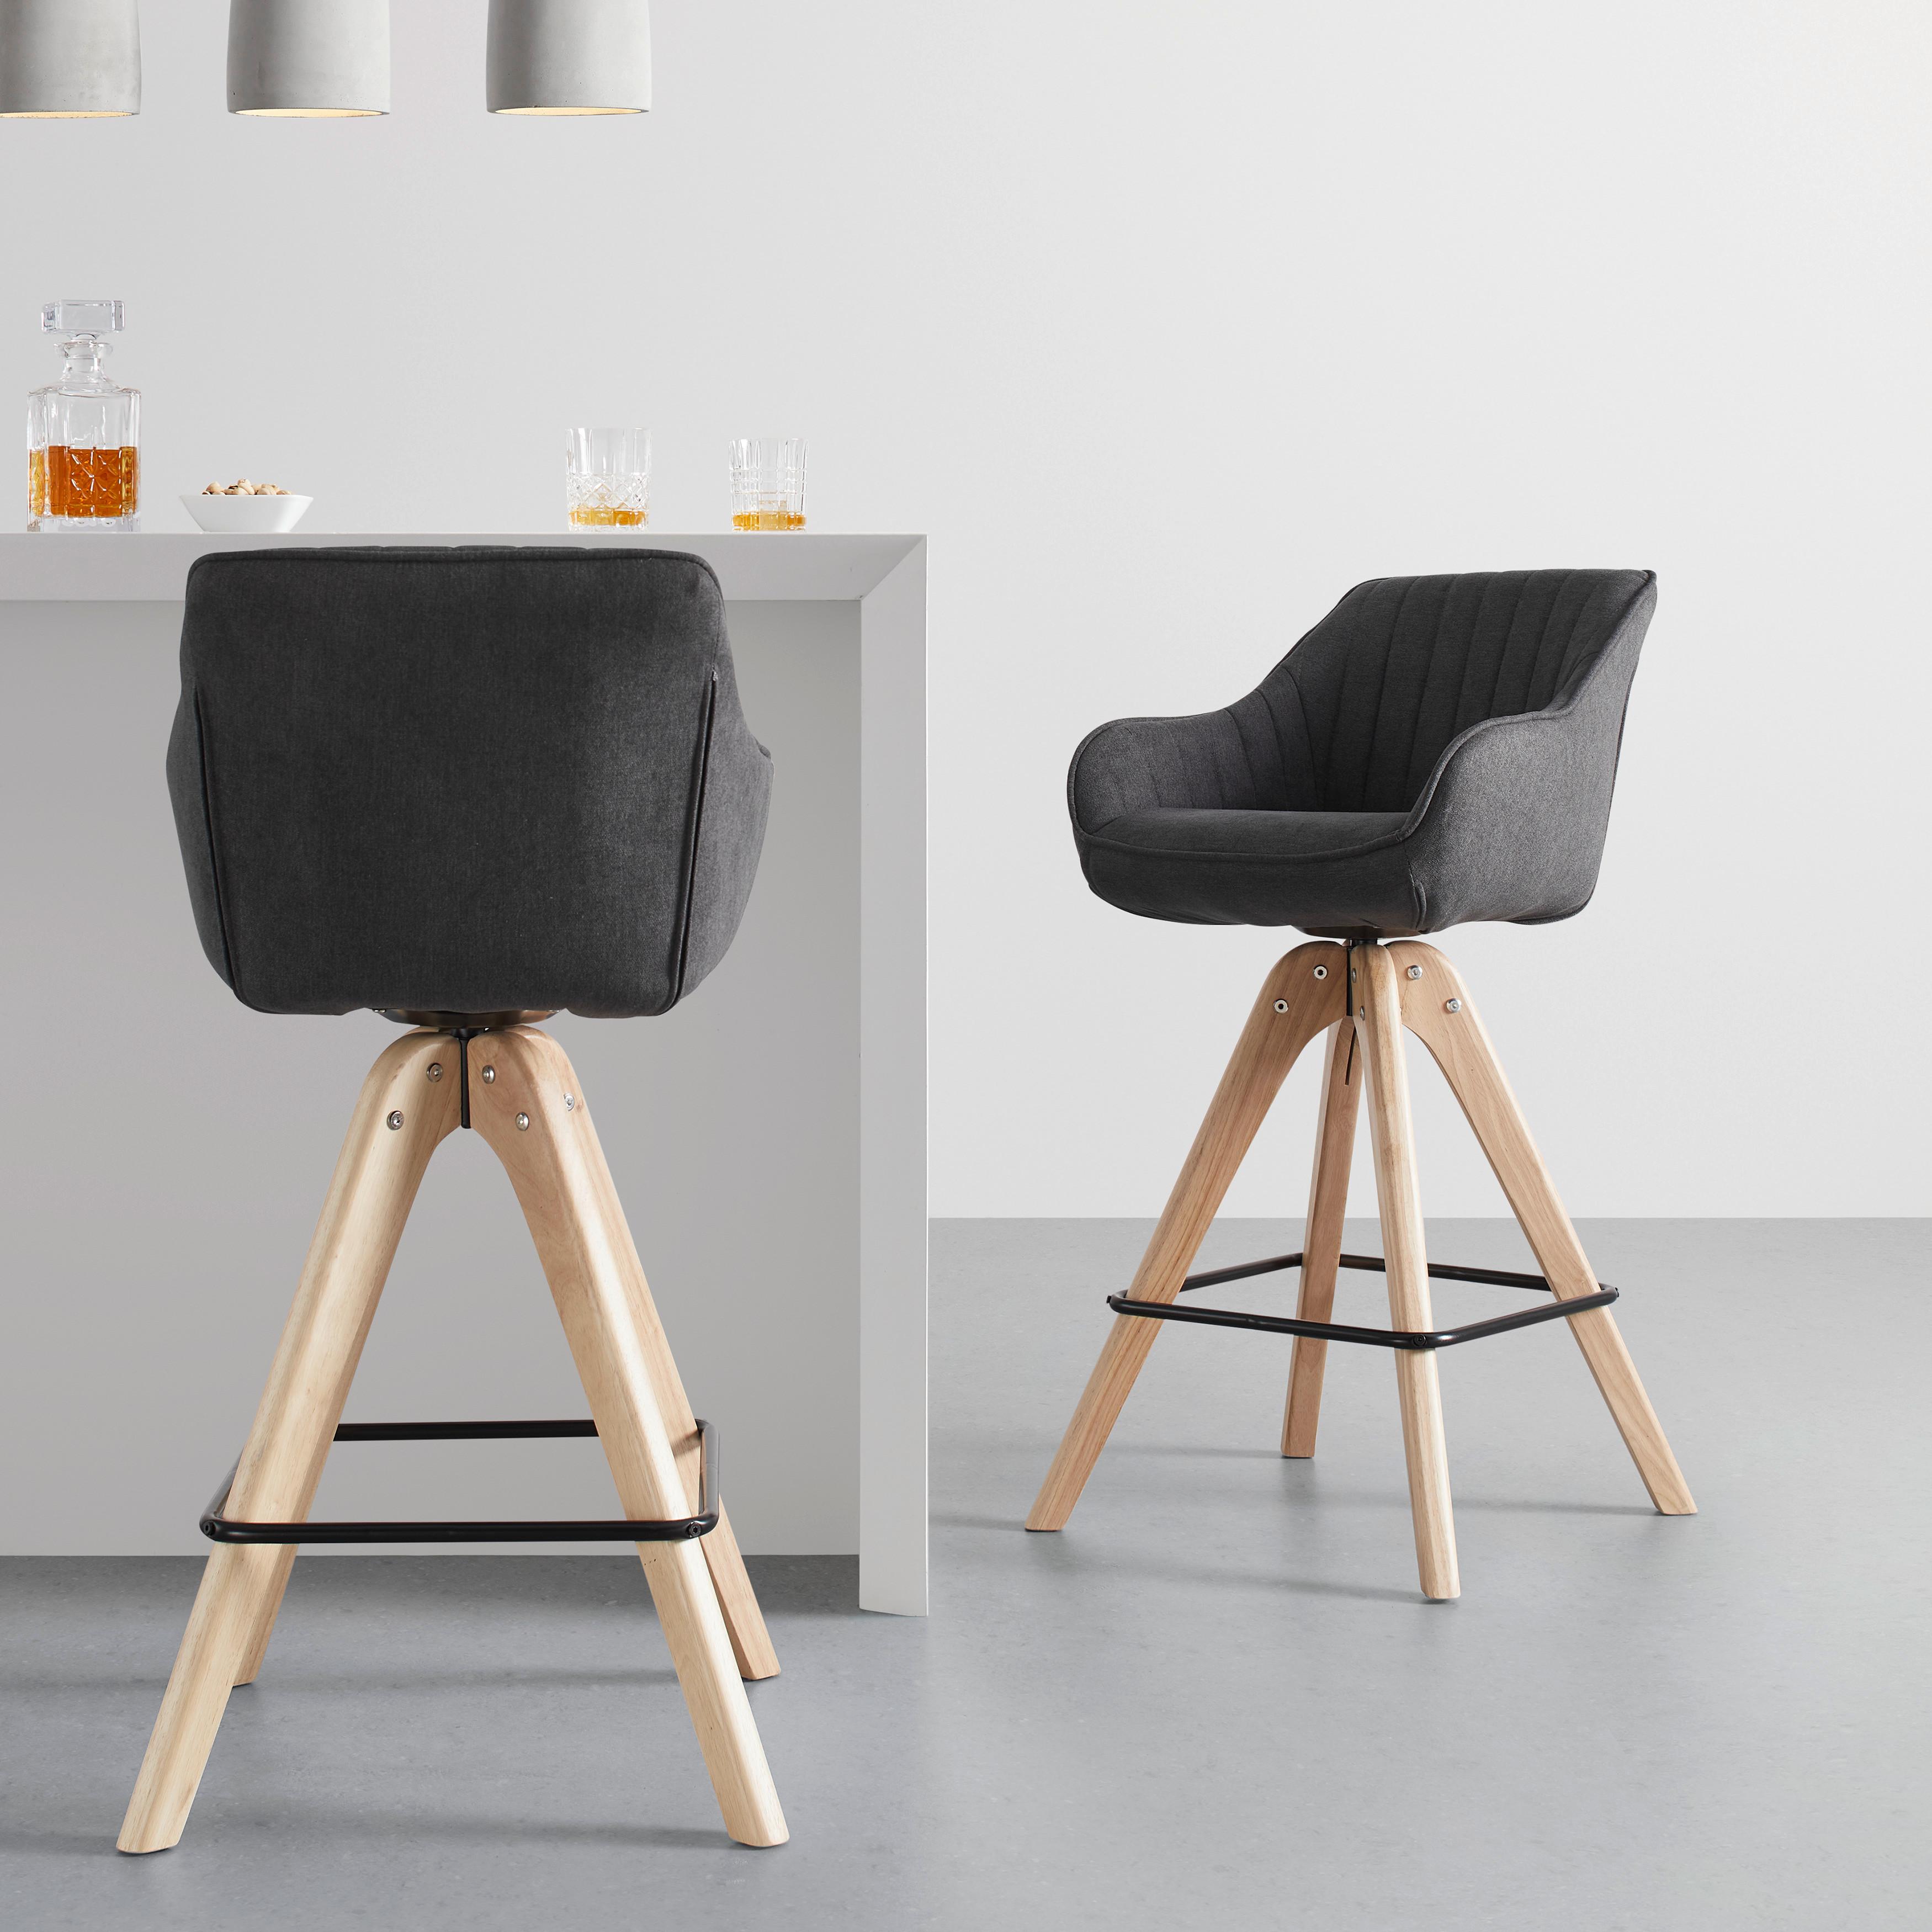 Barová Židle Leonie Otočný Sedák - barvy dubu/tmavě šedá, Moderní, kov/dřevo (55/106/56cm) - Bessagi Home